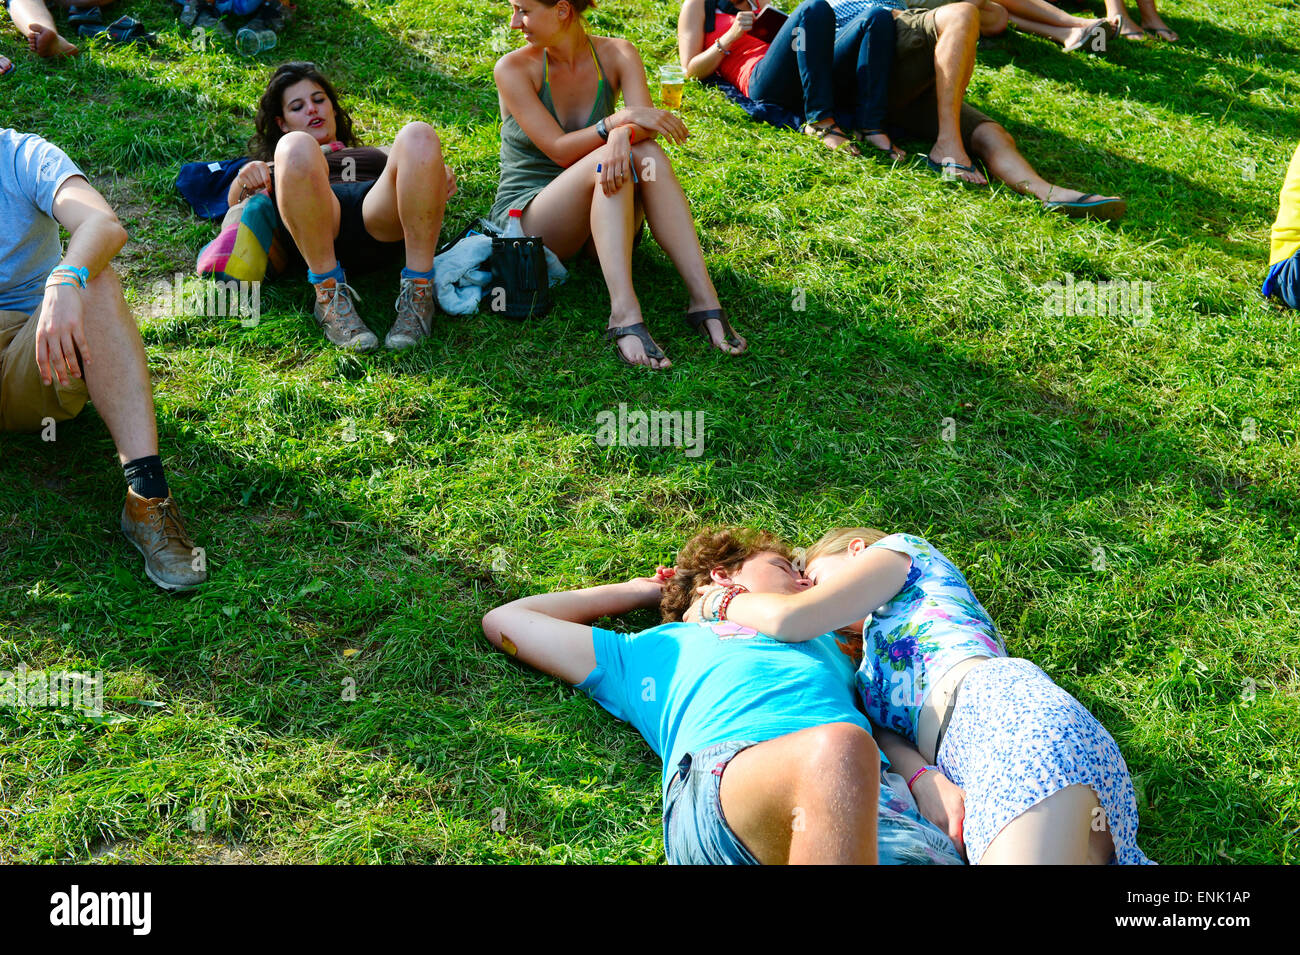 Par recostados en el pasto durante el festival de Sziget. Sziget es uno de los mayores festivales de Europa. Foto de stock